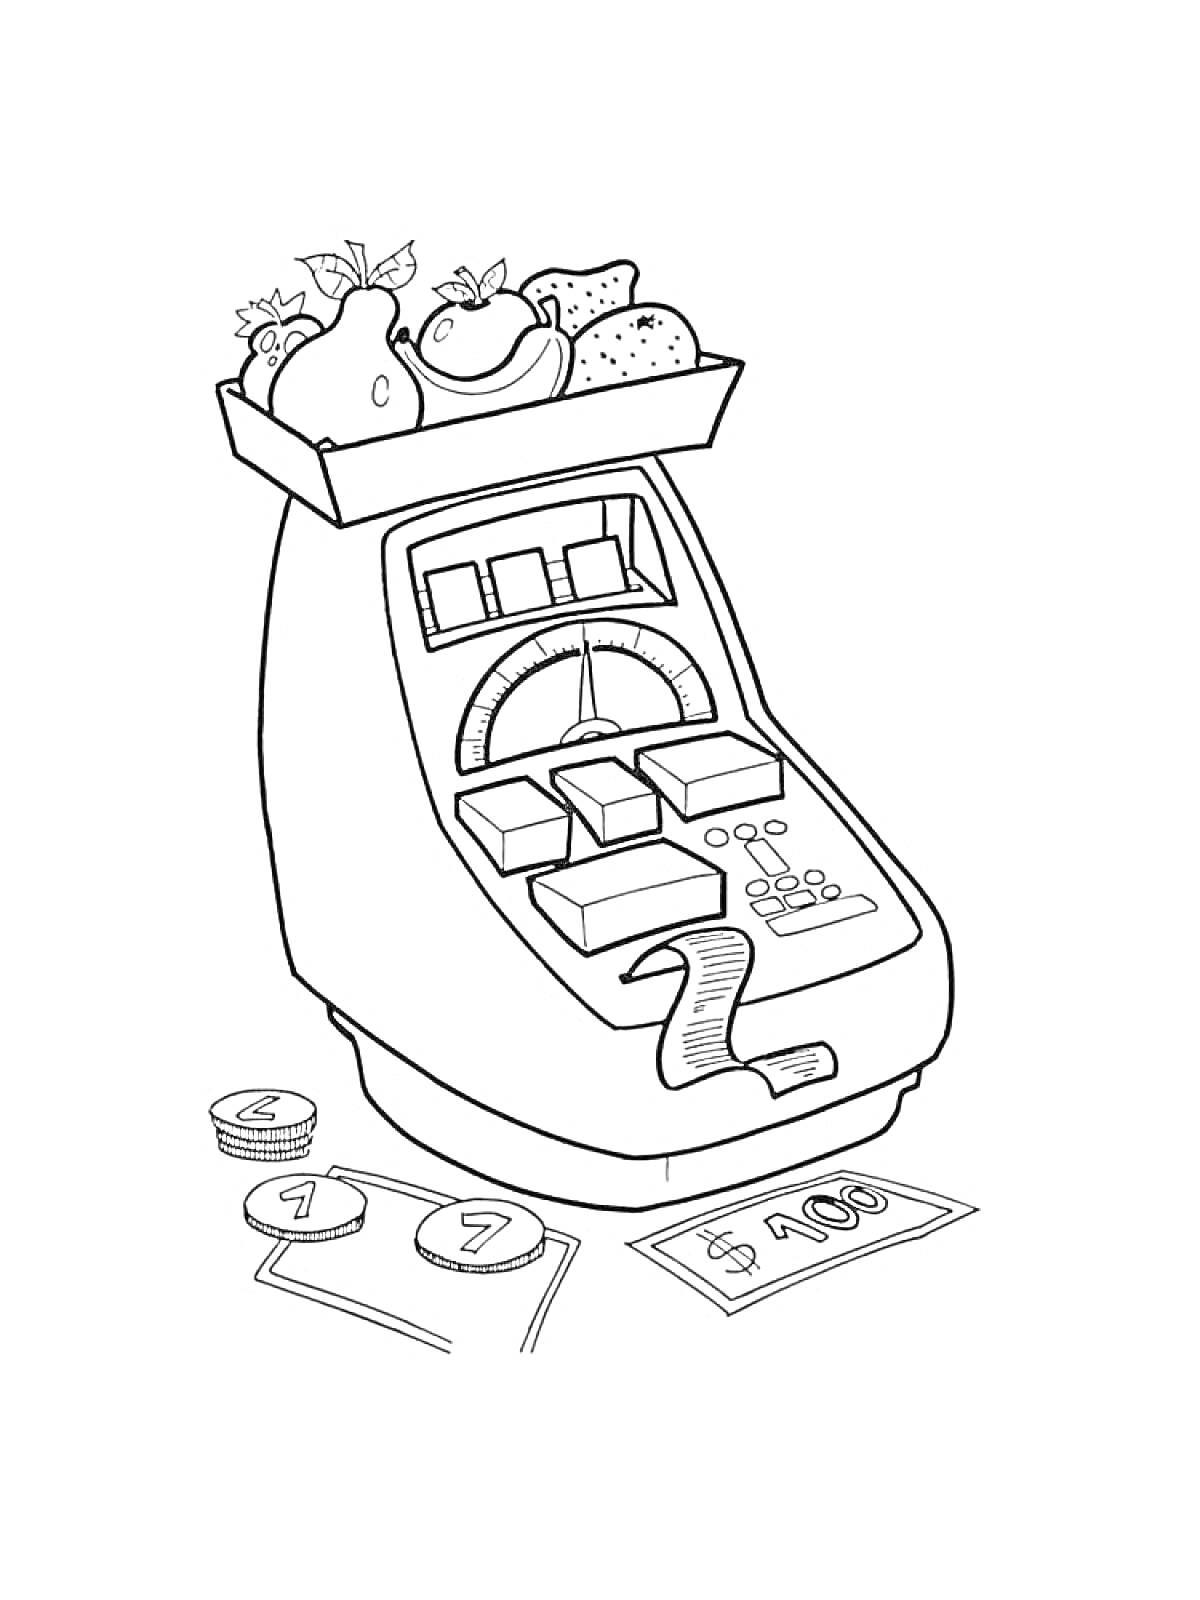 Раскраска Кассовый аппарат с продуктами, деньгами и монетами